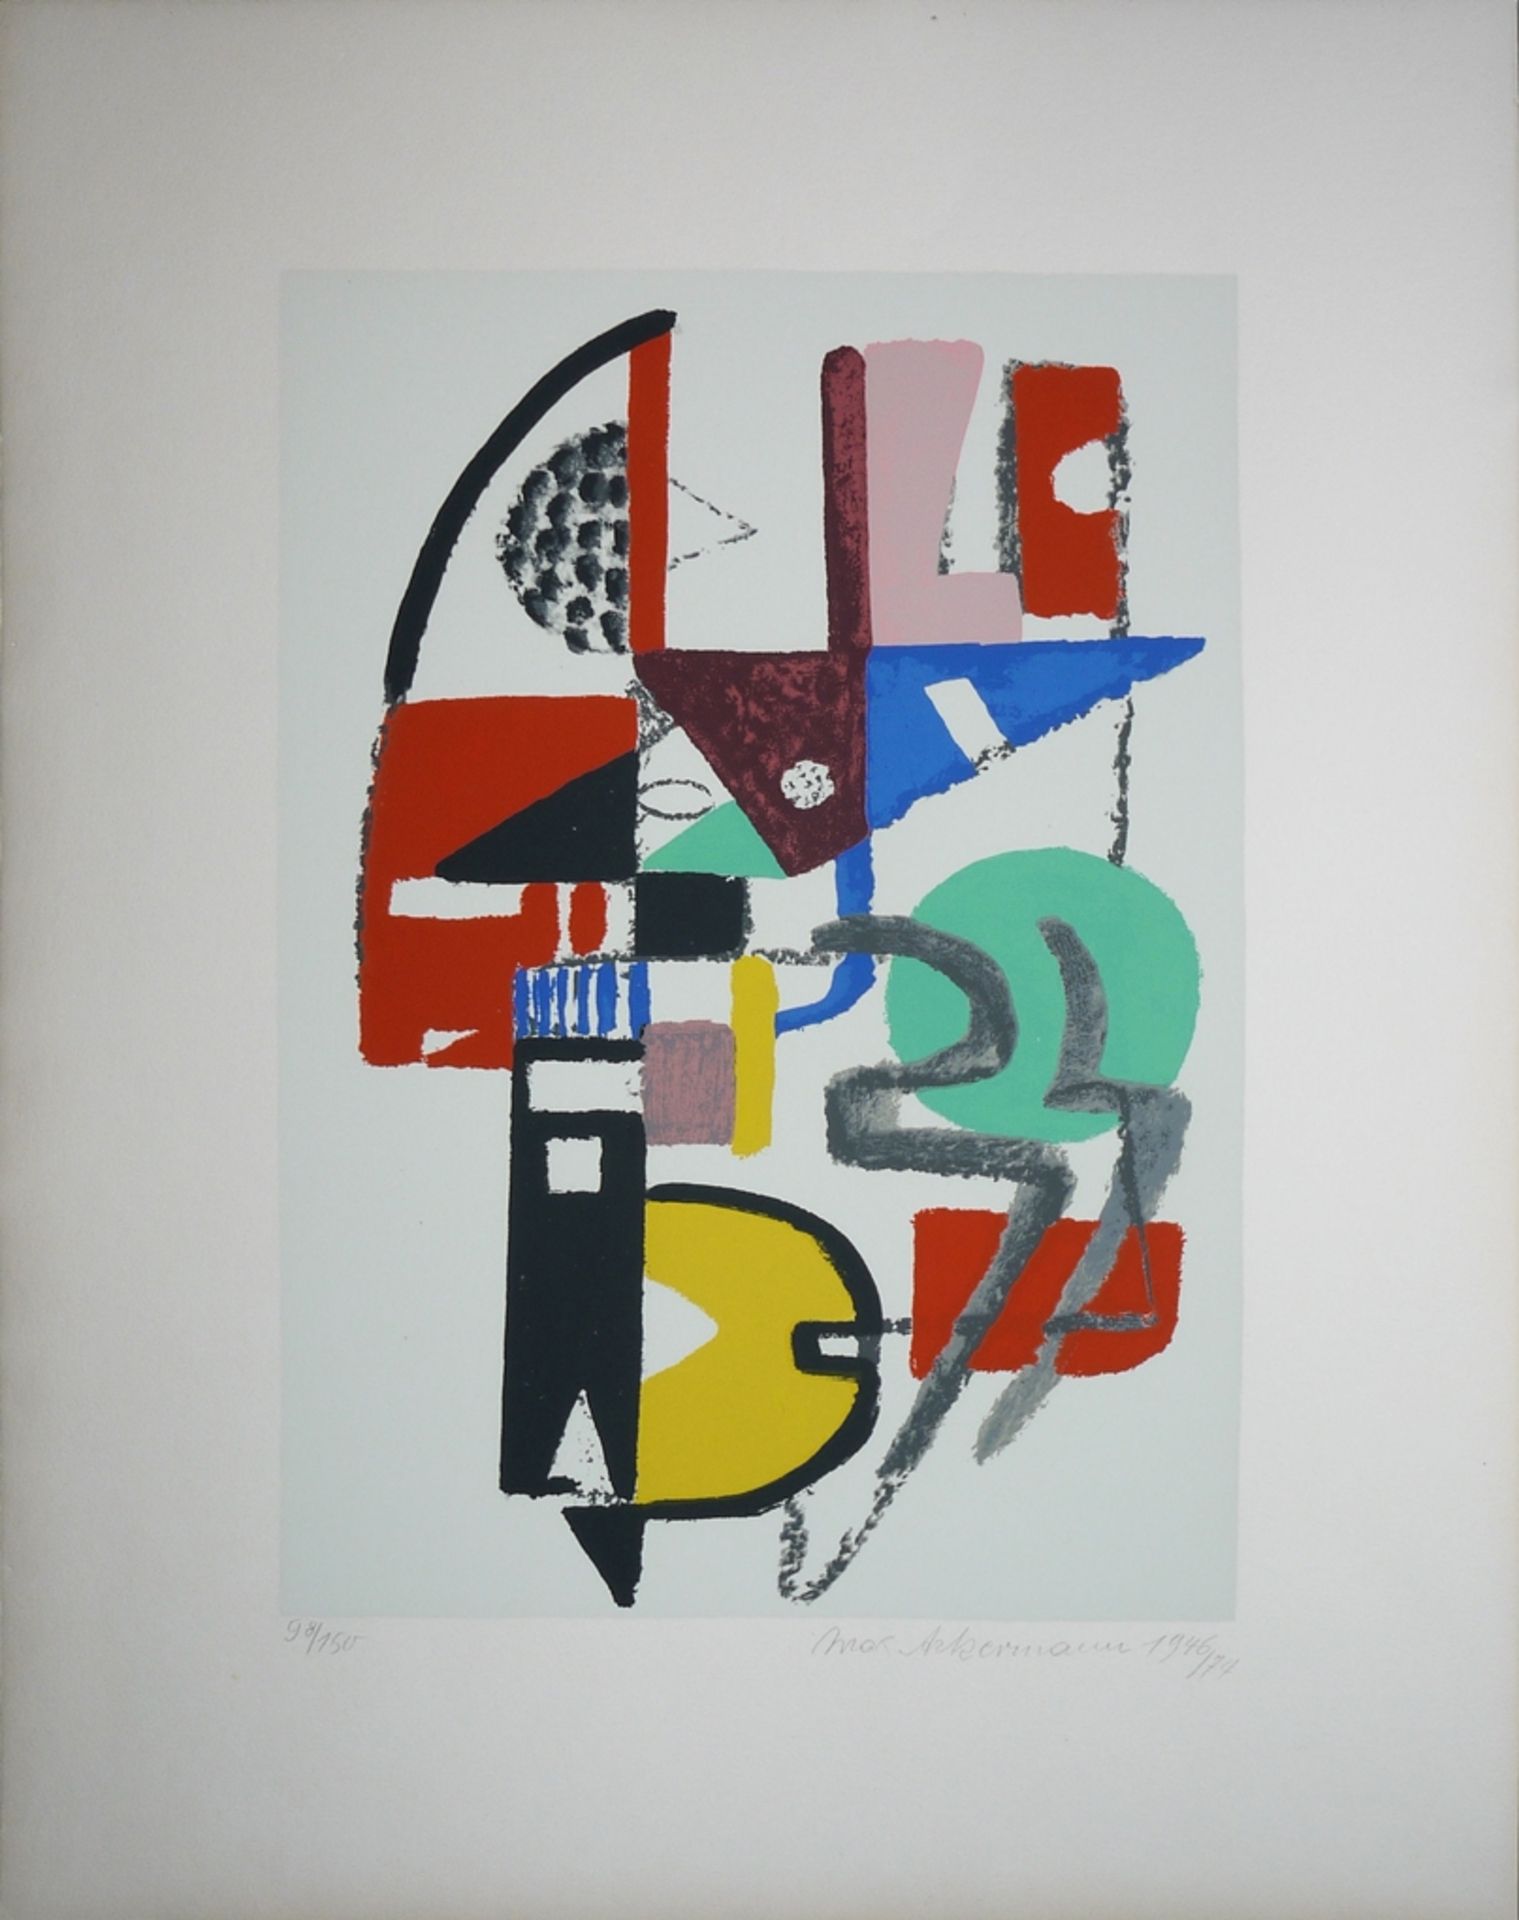 Max Ackermann, "Strahlende Pforte" und "Mauerbild", zwei signierte Farbserigraphien von 1972 und 19